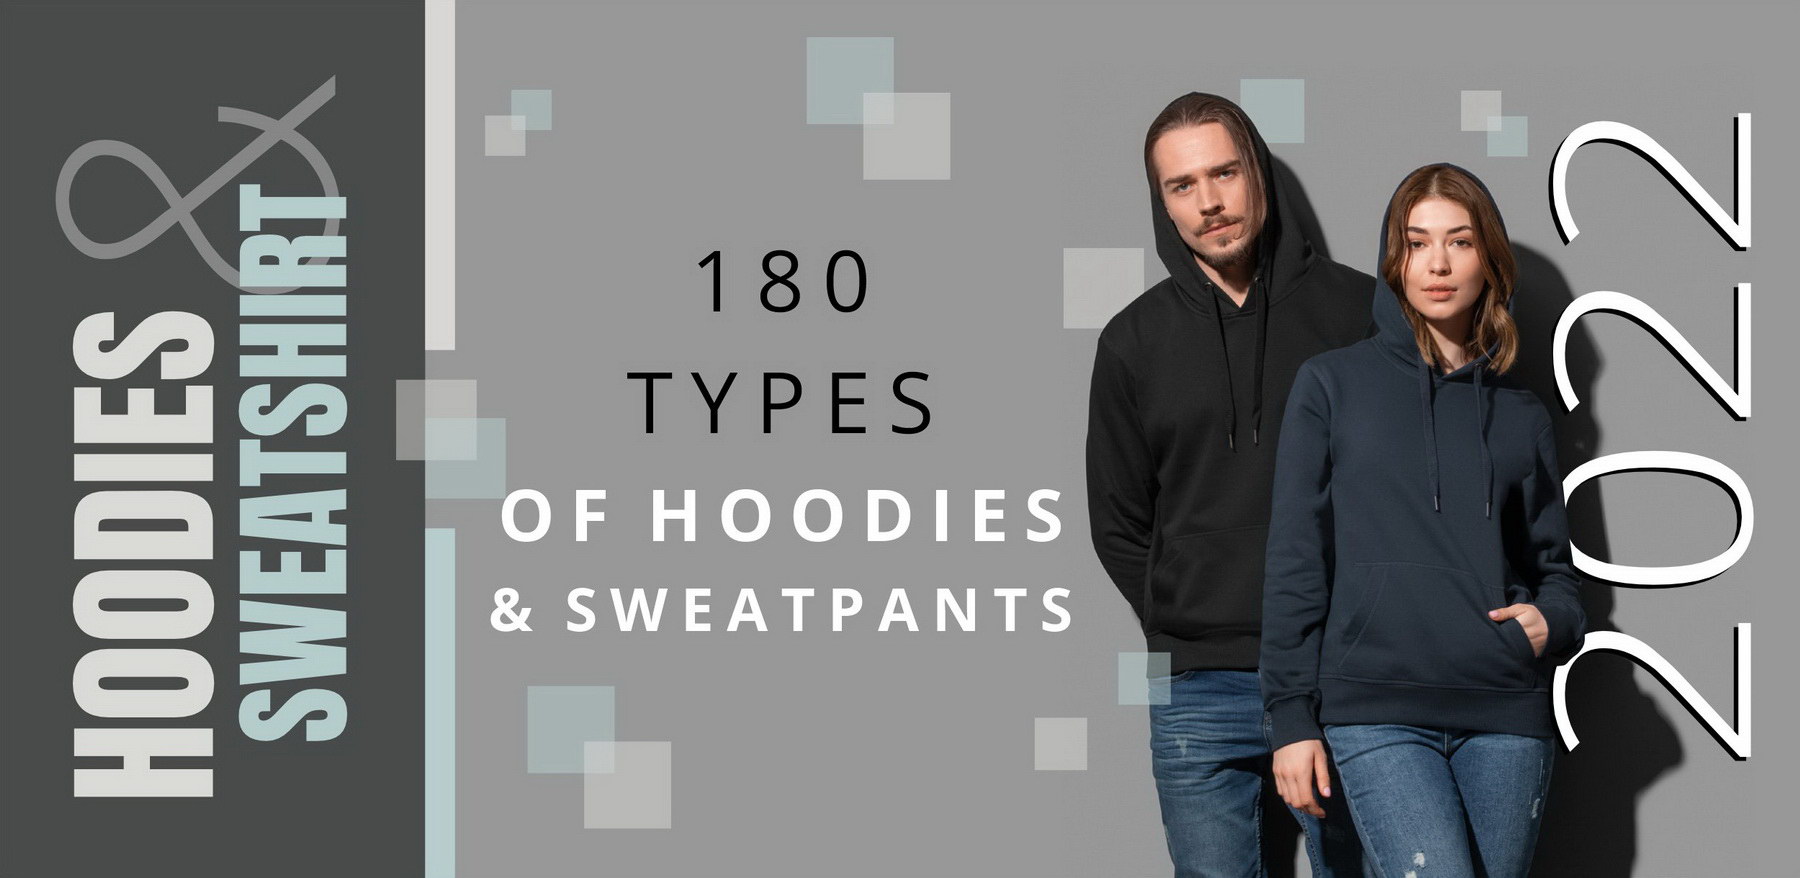 180 types of hoodies & sweatpants